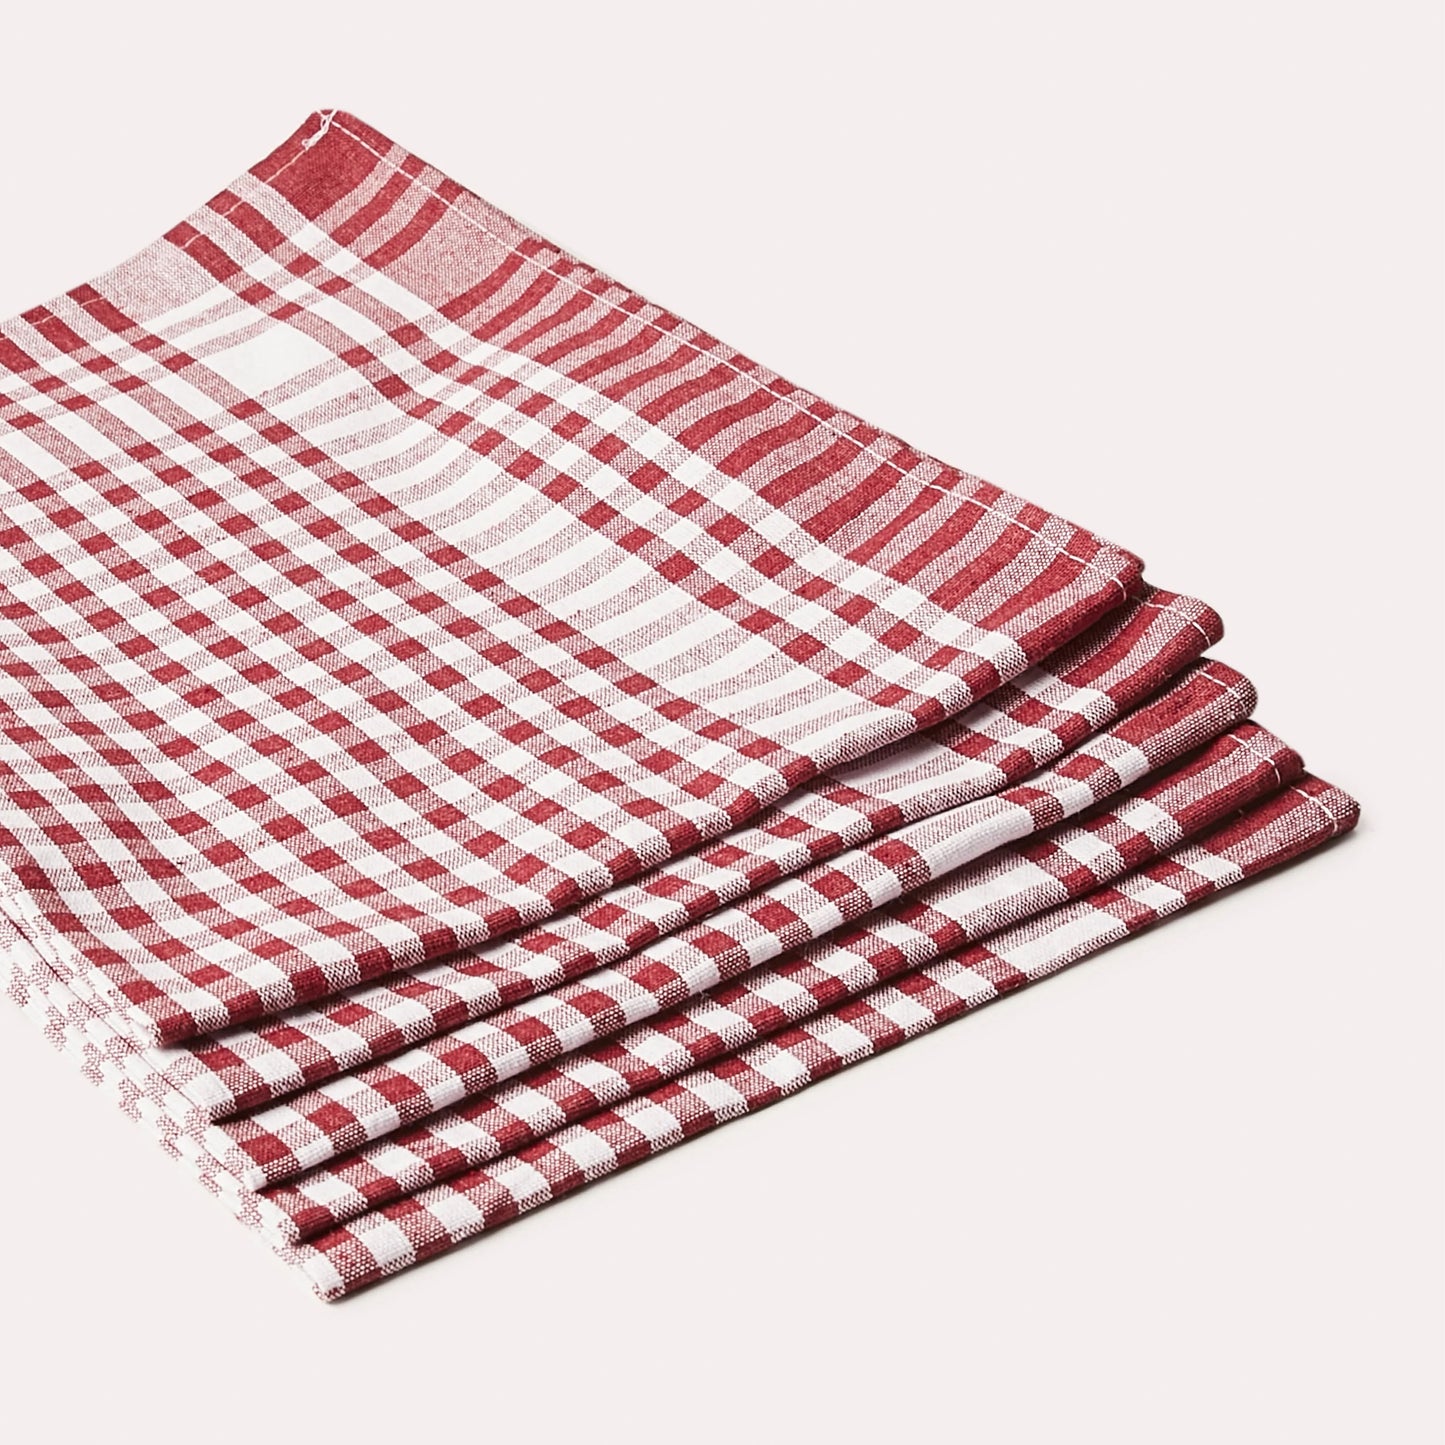 tea towel, table napkin, napkins, cloth napkins, kitchen linens, kithchen textile